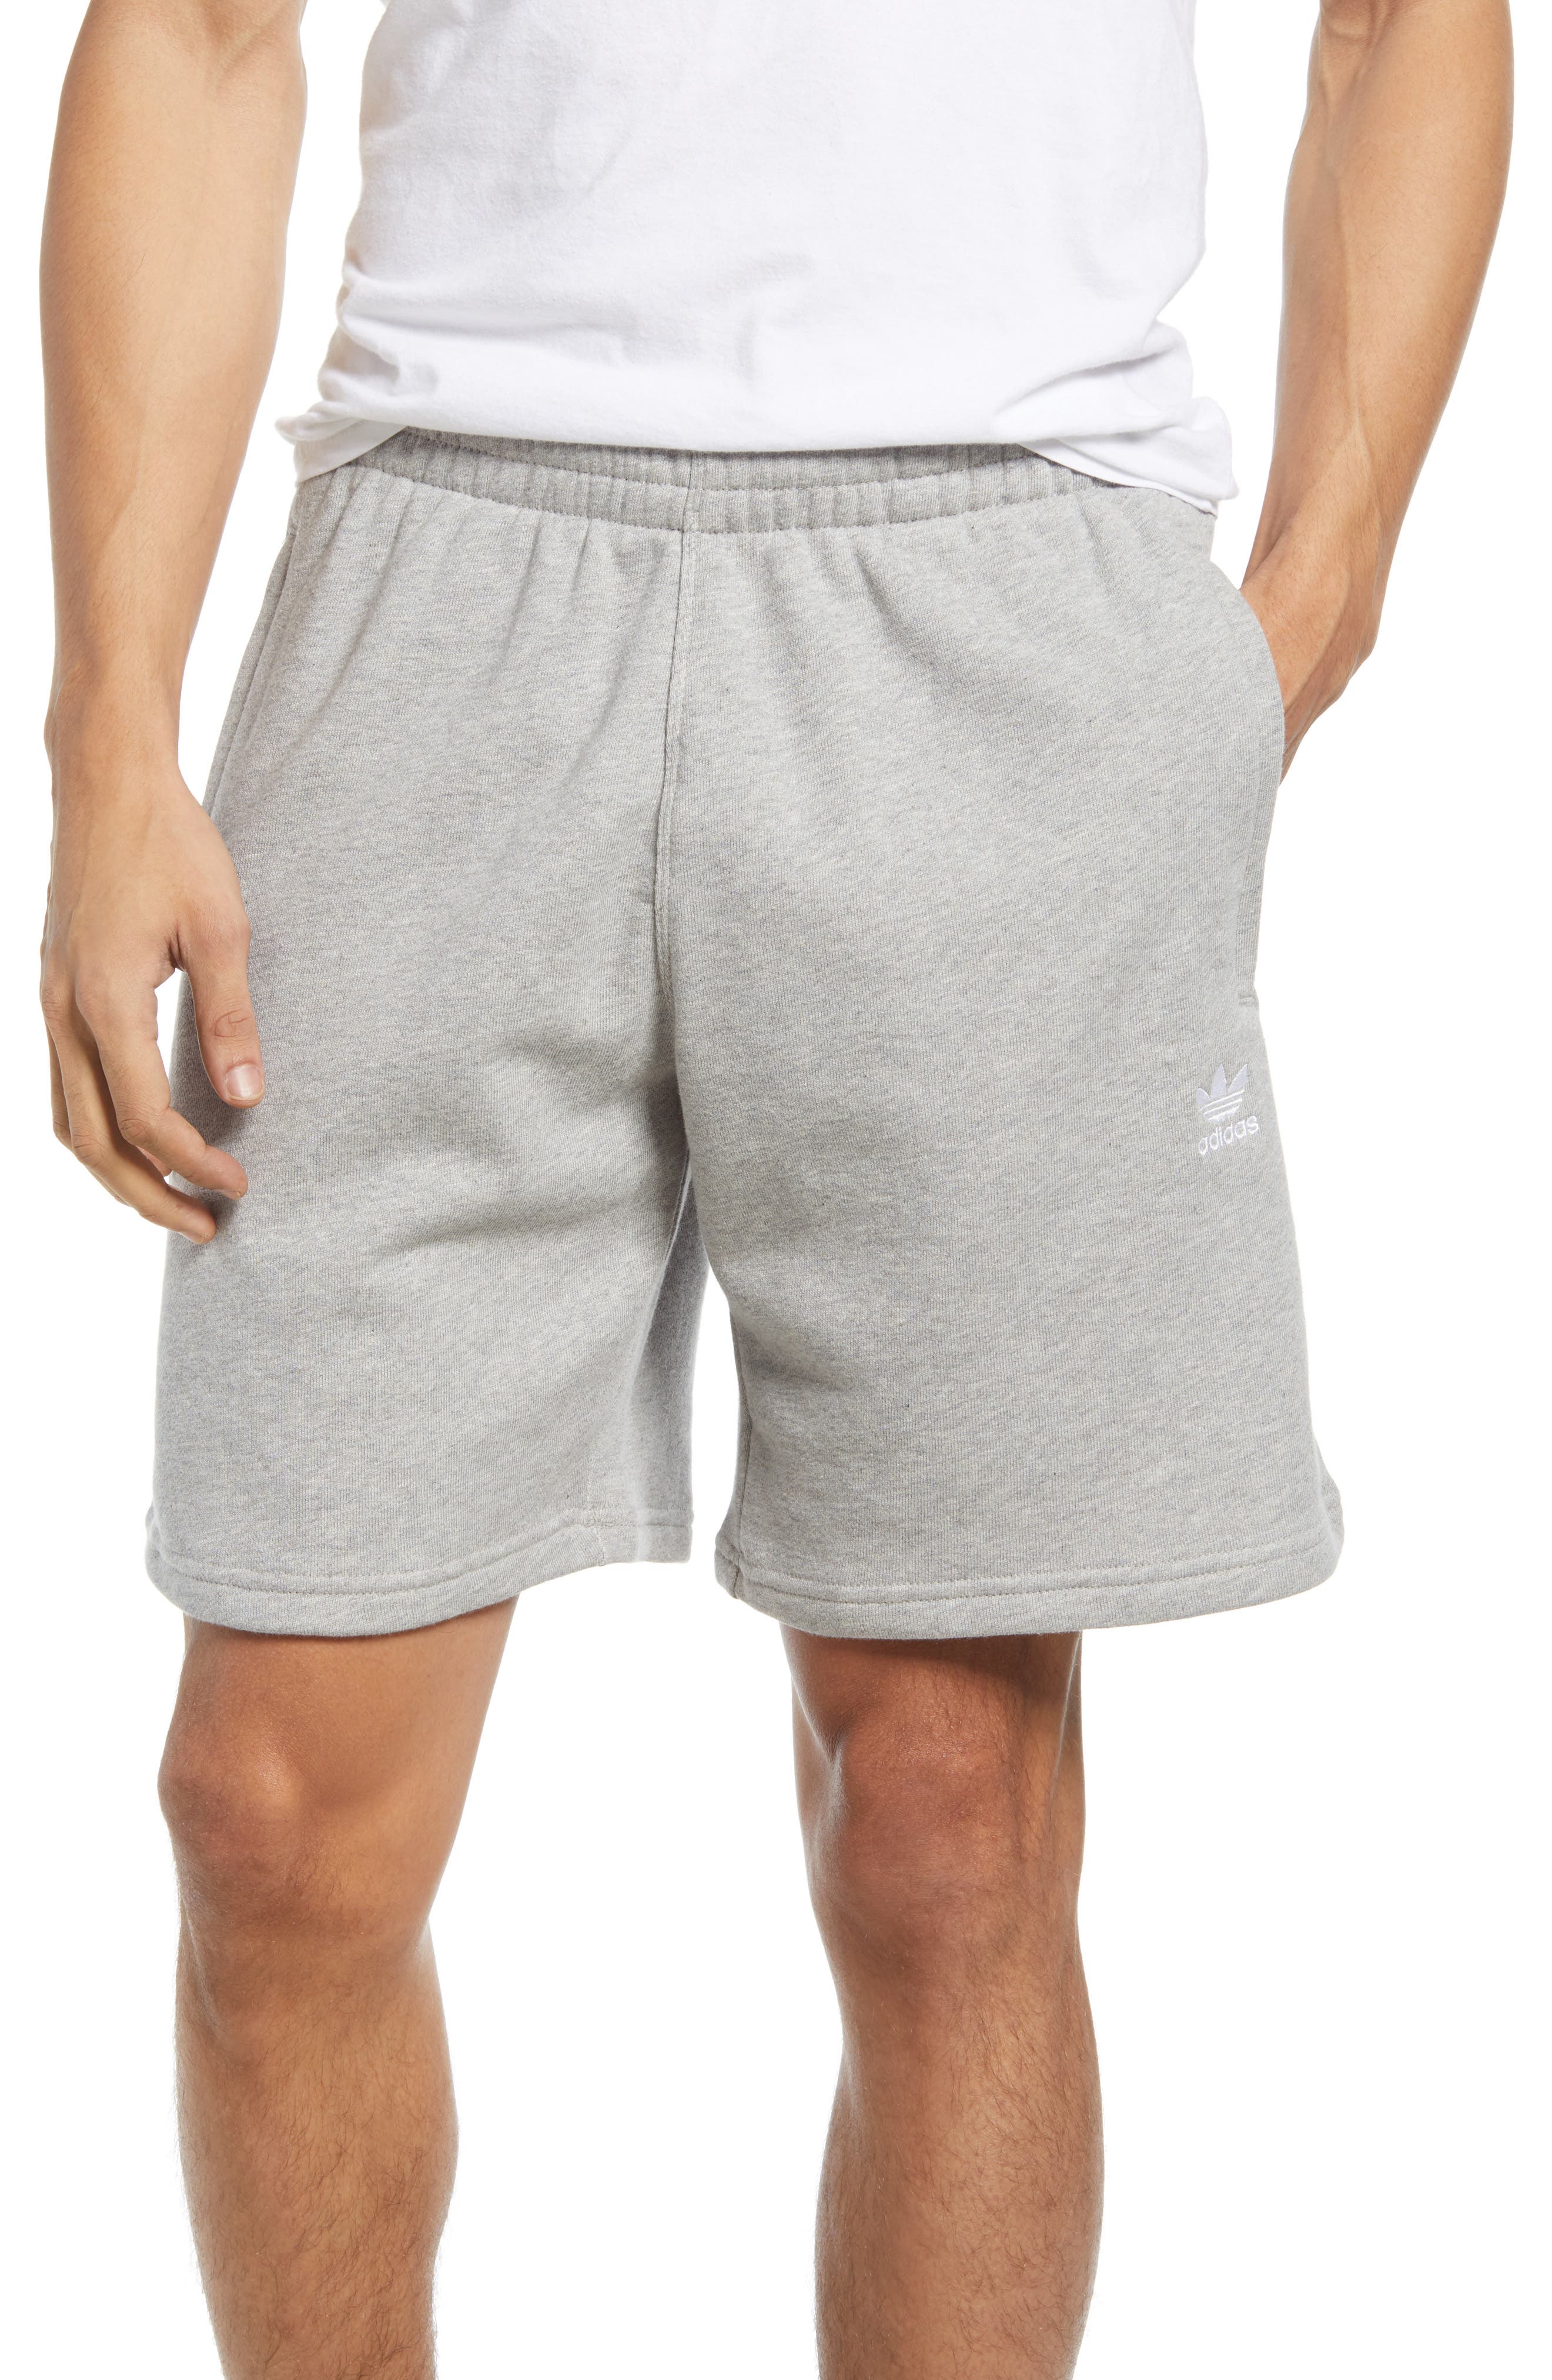 adidas men's workout shorts